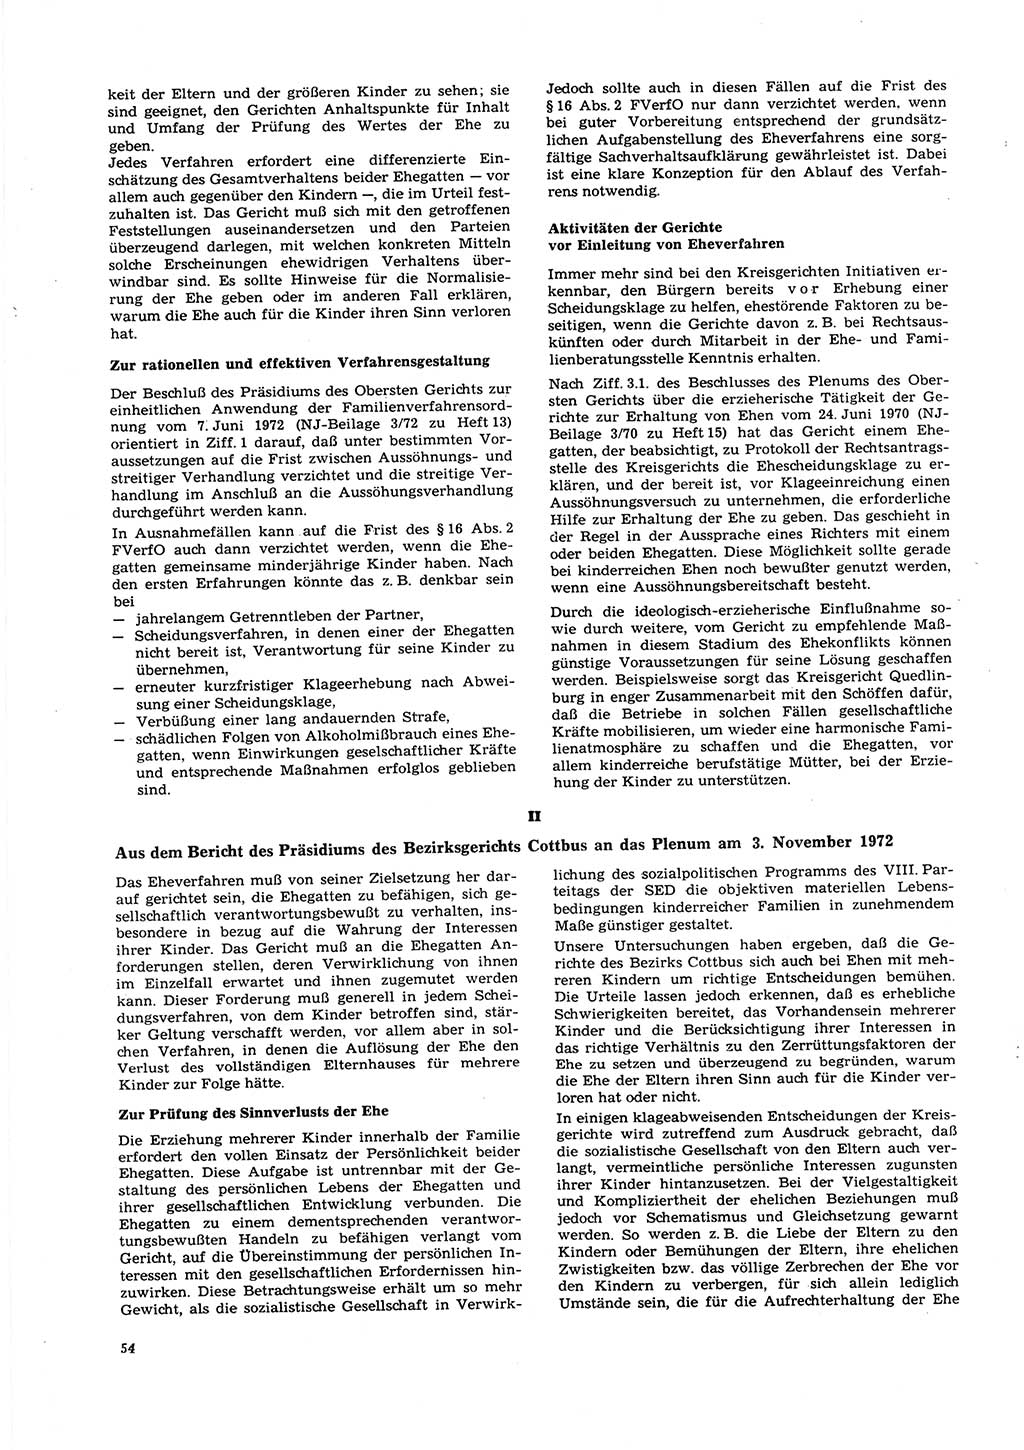 Neue Justiz (NJ), Zeitschrift für Recht und Rechtswissenschaft [Deutsche Demokratische Republik (DDR)], 27. Jahrgang 1973, Seite 54 (NJ DDR 1973, S. 54)